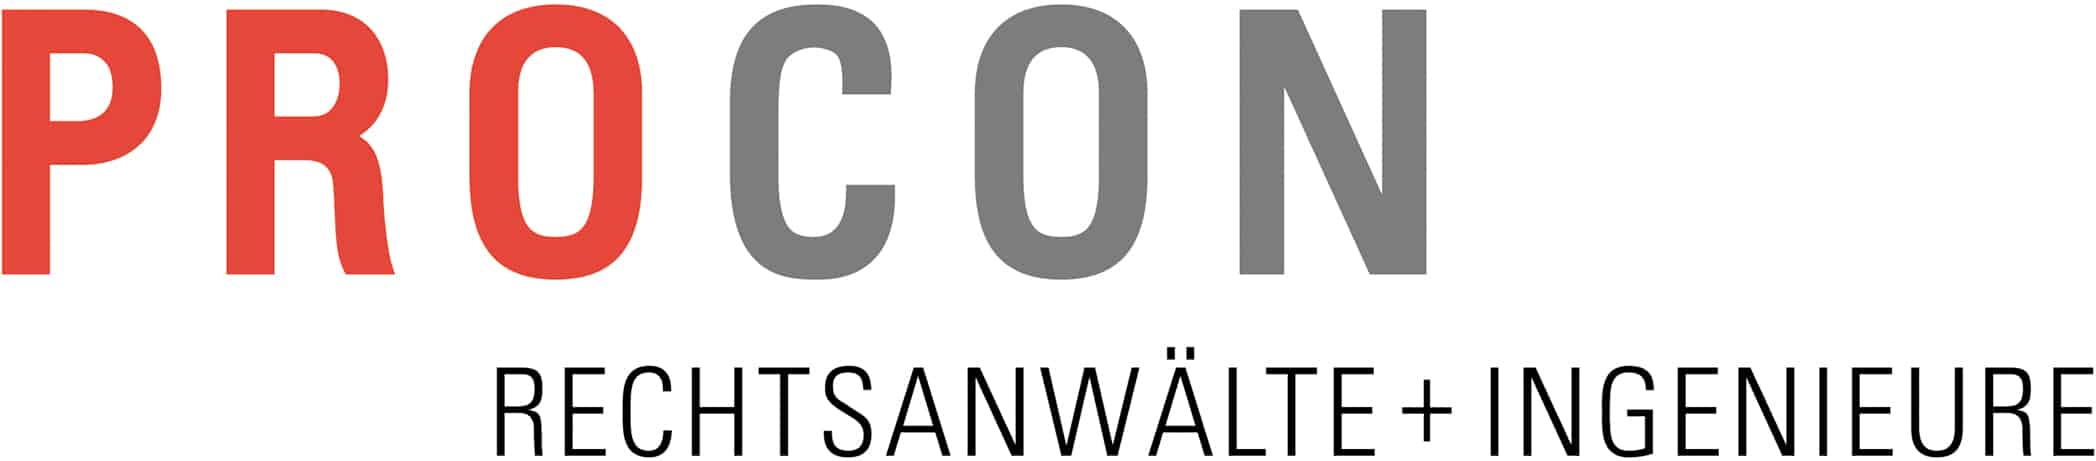 procon logo